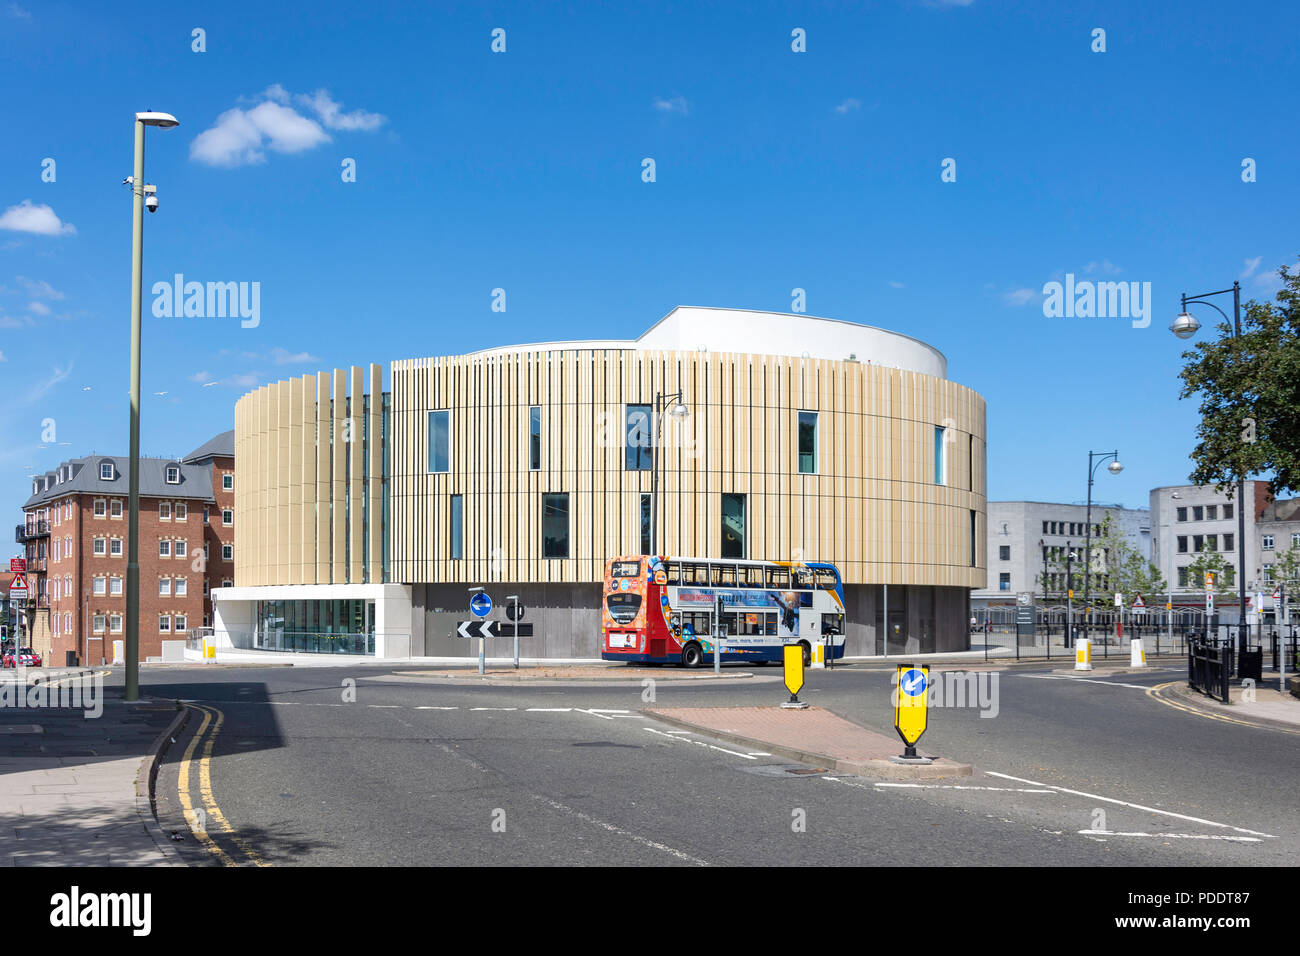 Das Wort, Nationales Zentrum für das geschriebene Wort, Market Place, South Shields, Tyne und Wear, England, Vereinigtes Königreich Stockfoto